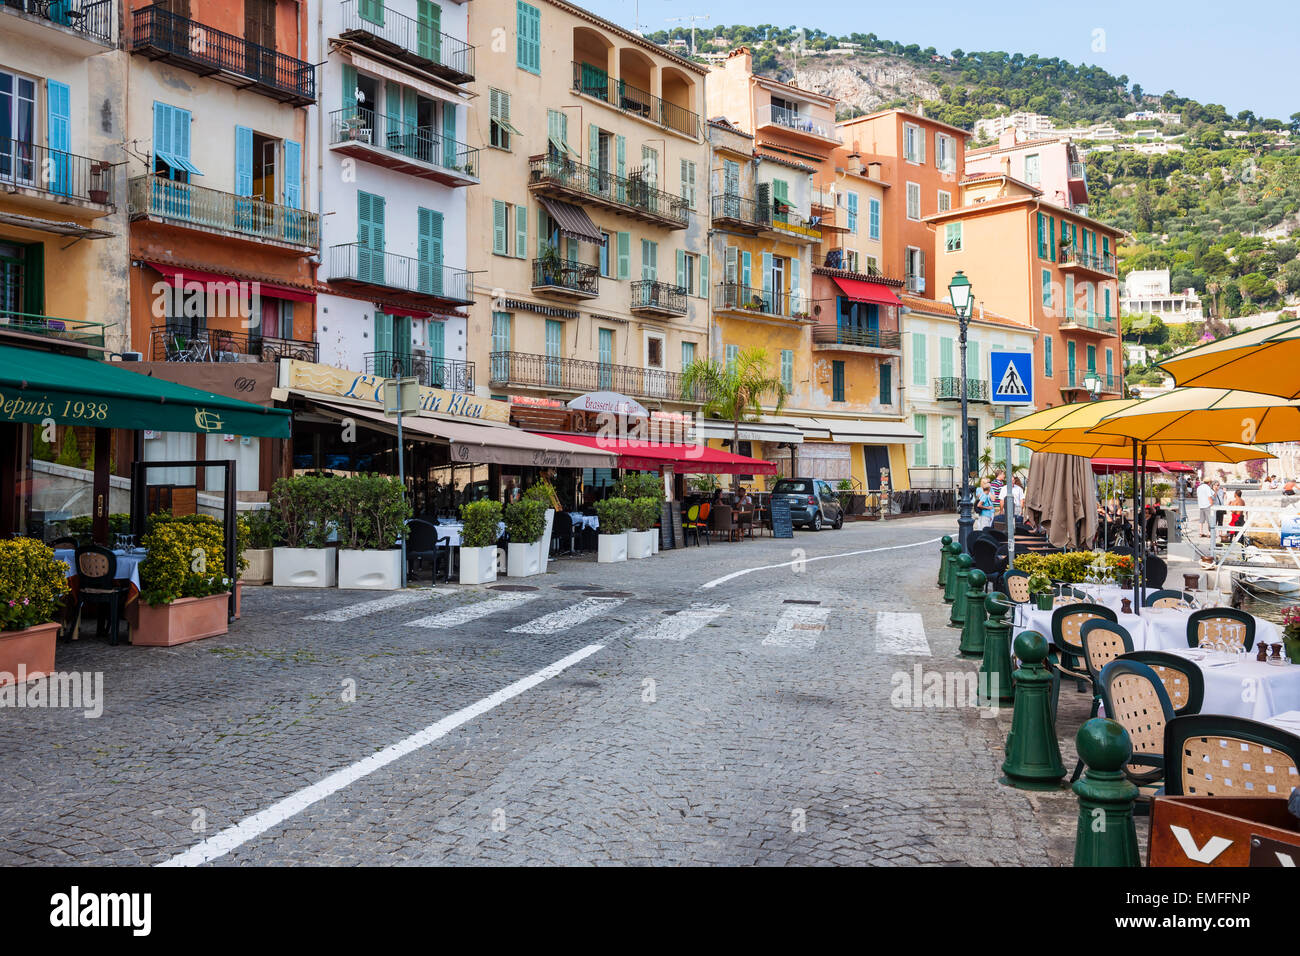 VILLEFRANCHE-SUR-MER, Frankreich-4. Oktober 2014: Restaurants mit Außenterrassen mit Blick auf Mittelmeer willkommen Touristen im Schlepptau Stockfoto